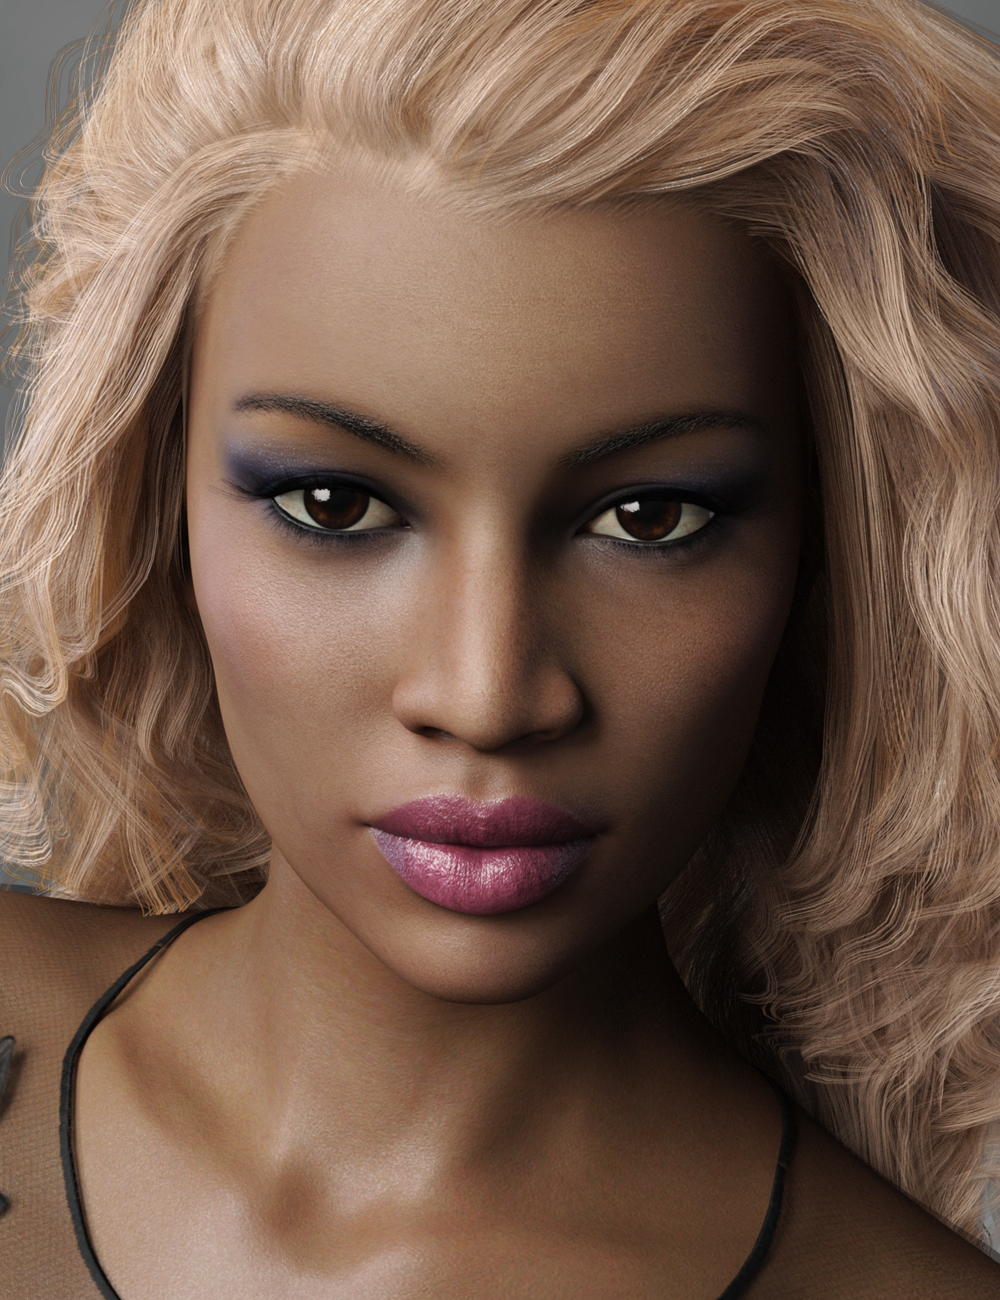 FW Tonya HD for Monique 8 by: Fred Winkler Art, 3D Models by Daz 3D